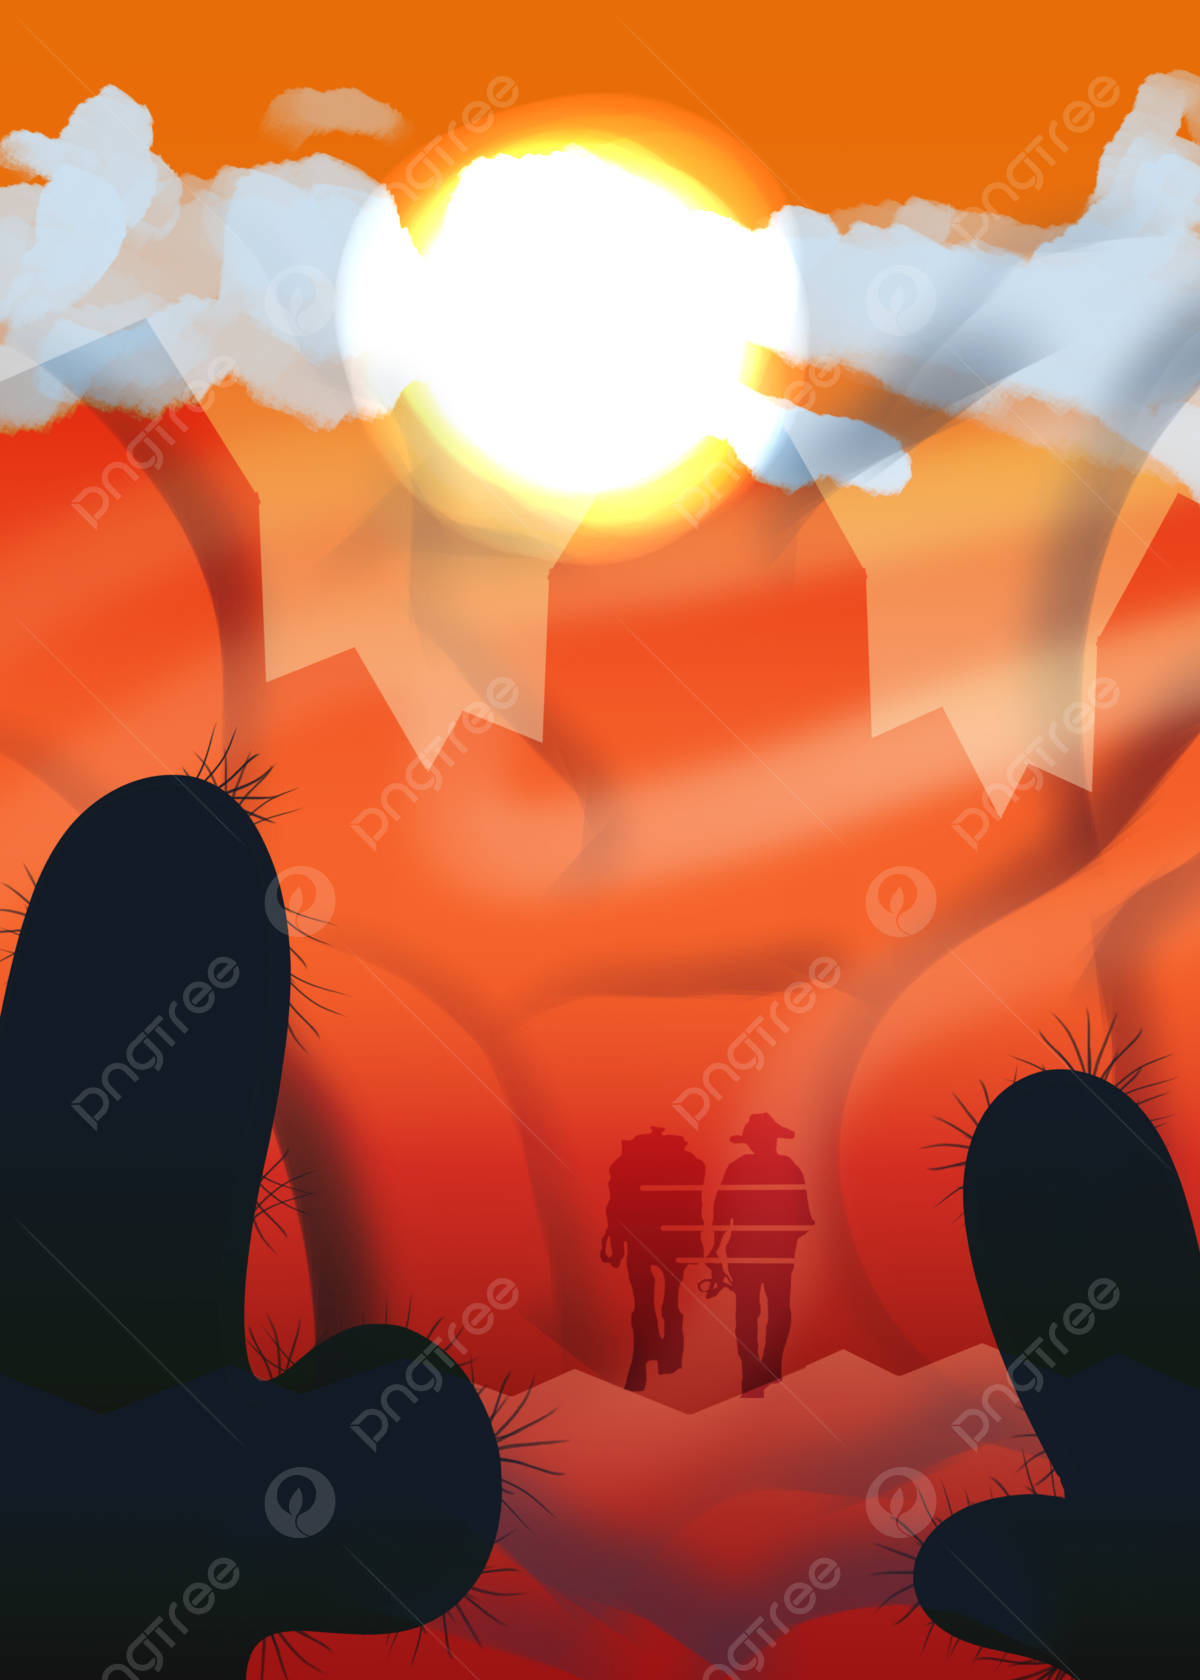 Einpaar, Das Bei Sonnenuntergang In Der Wüste Spazieren Geht. Wallpaper